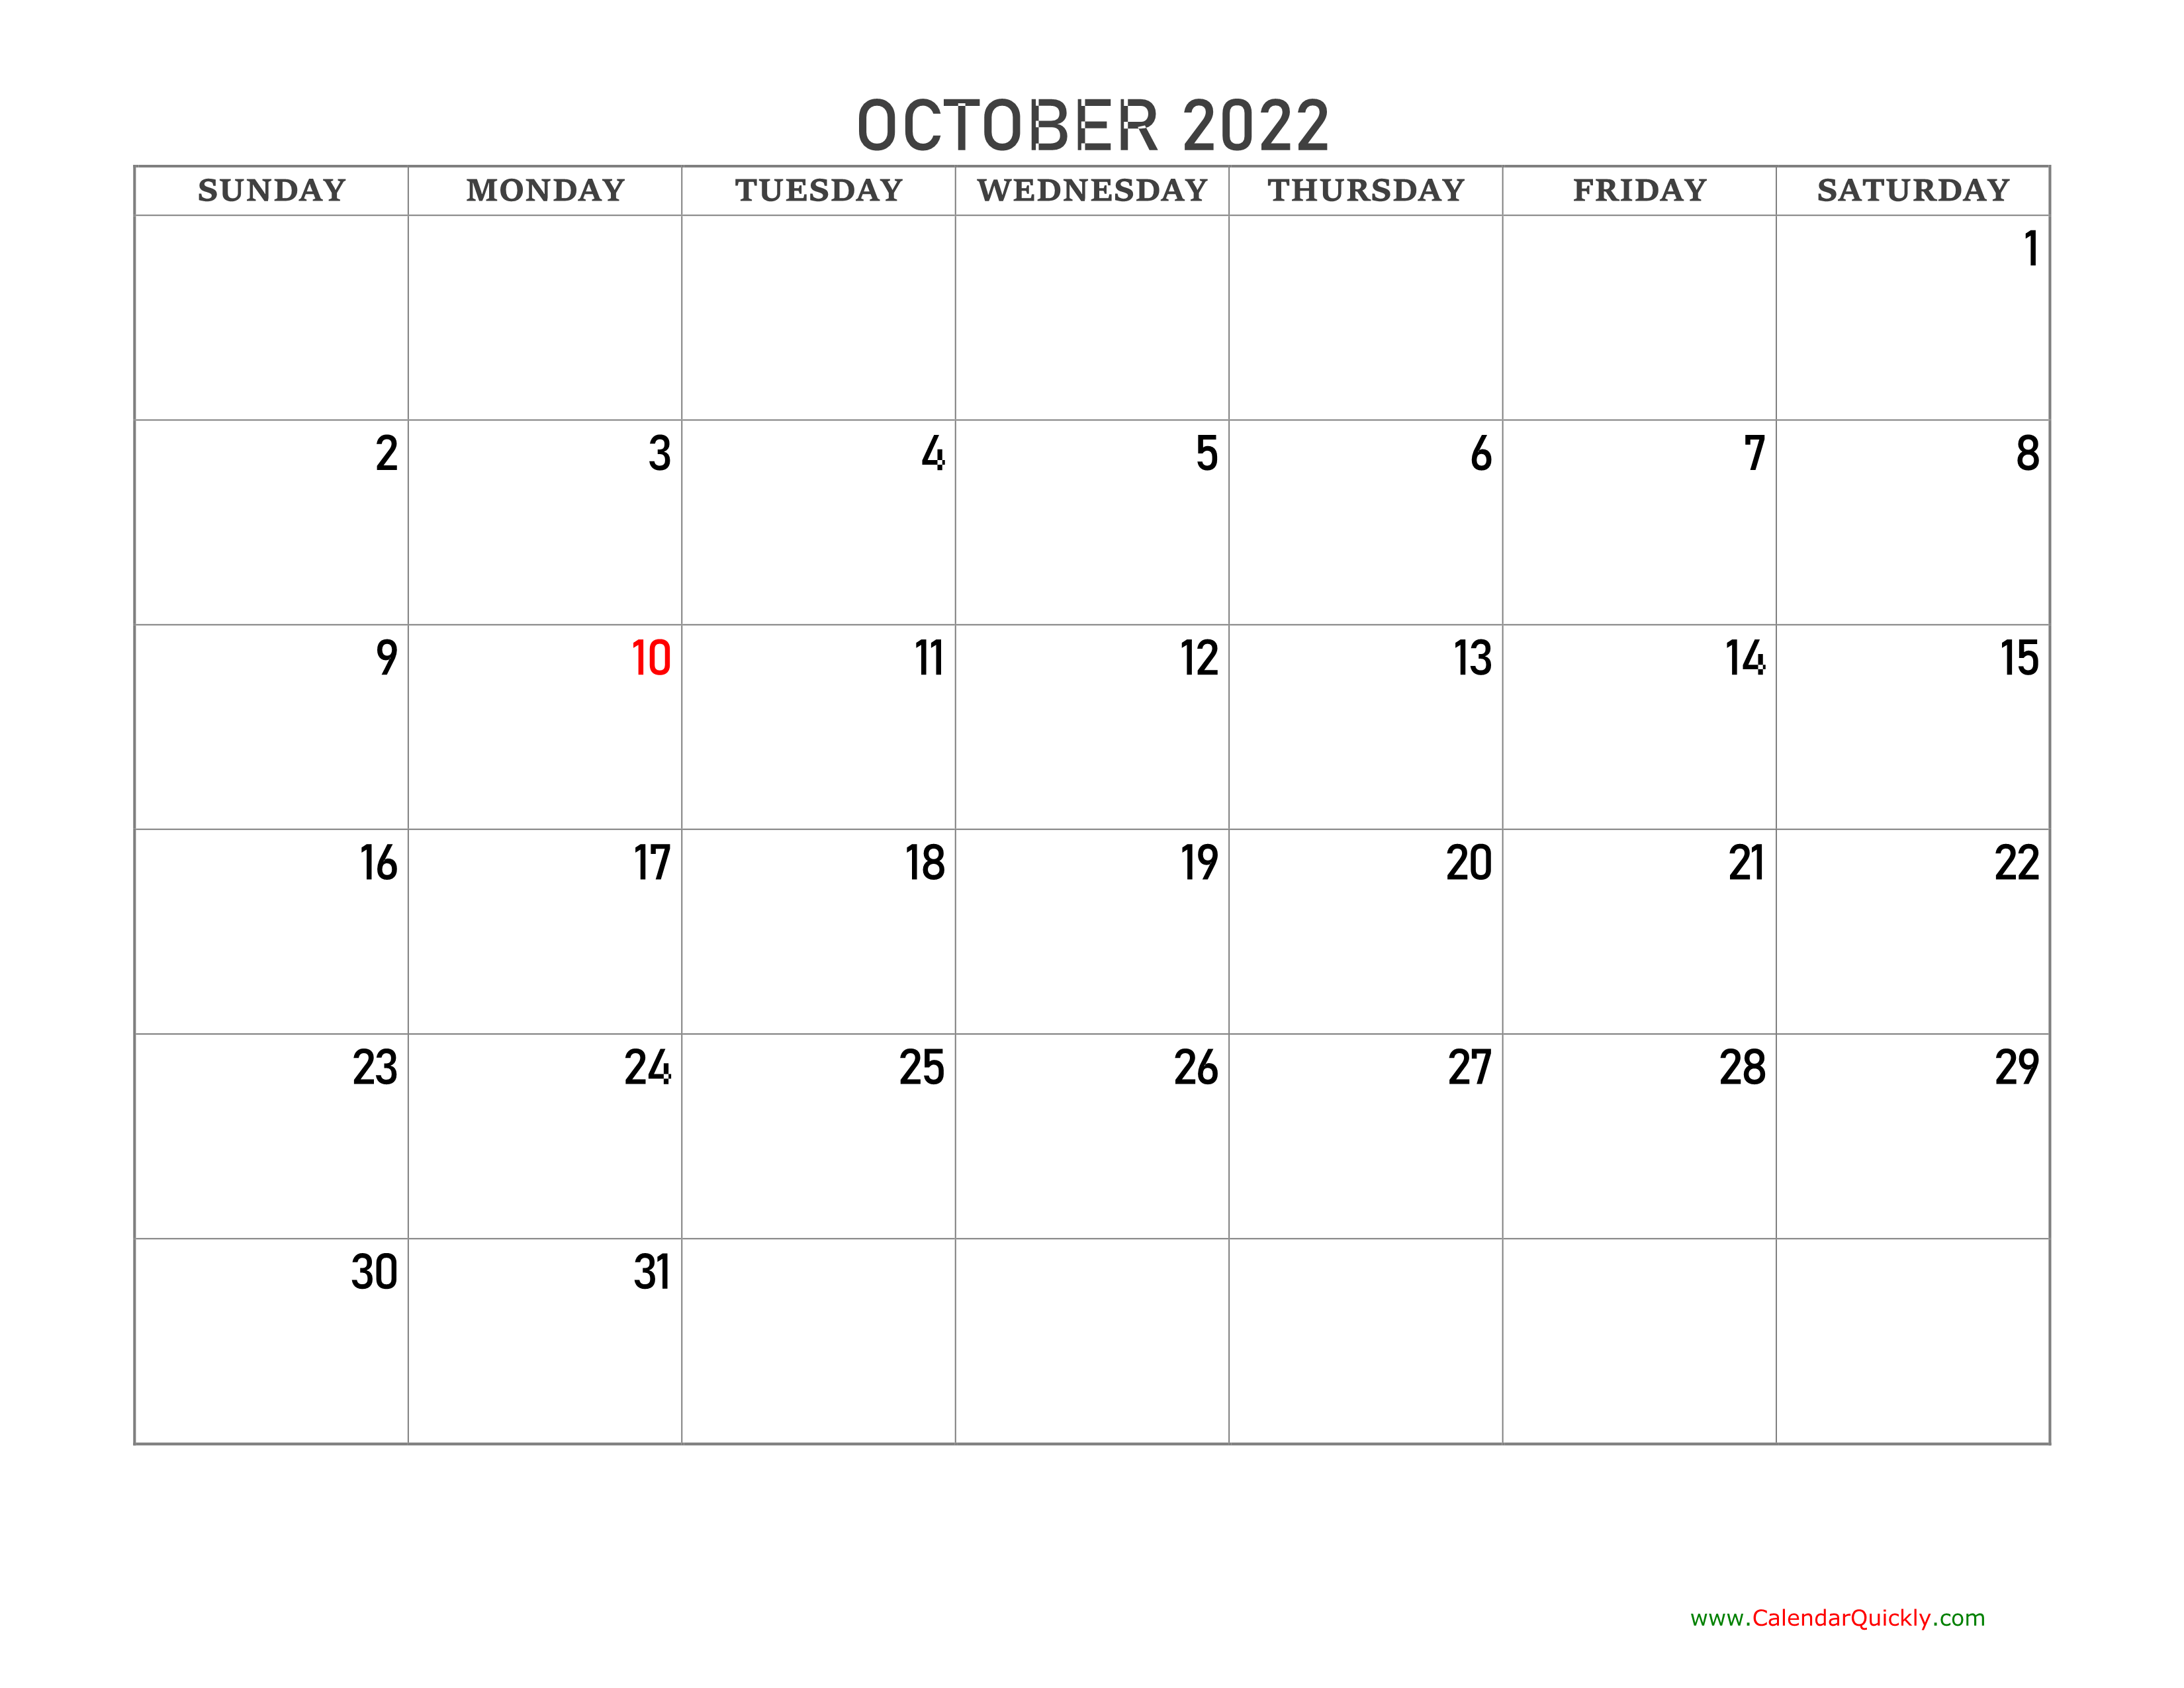 October 2022 Blank Calendar | Calendar Quickly